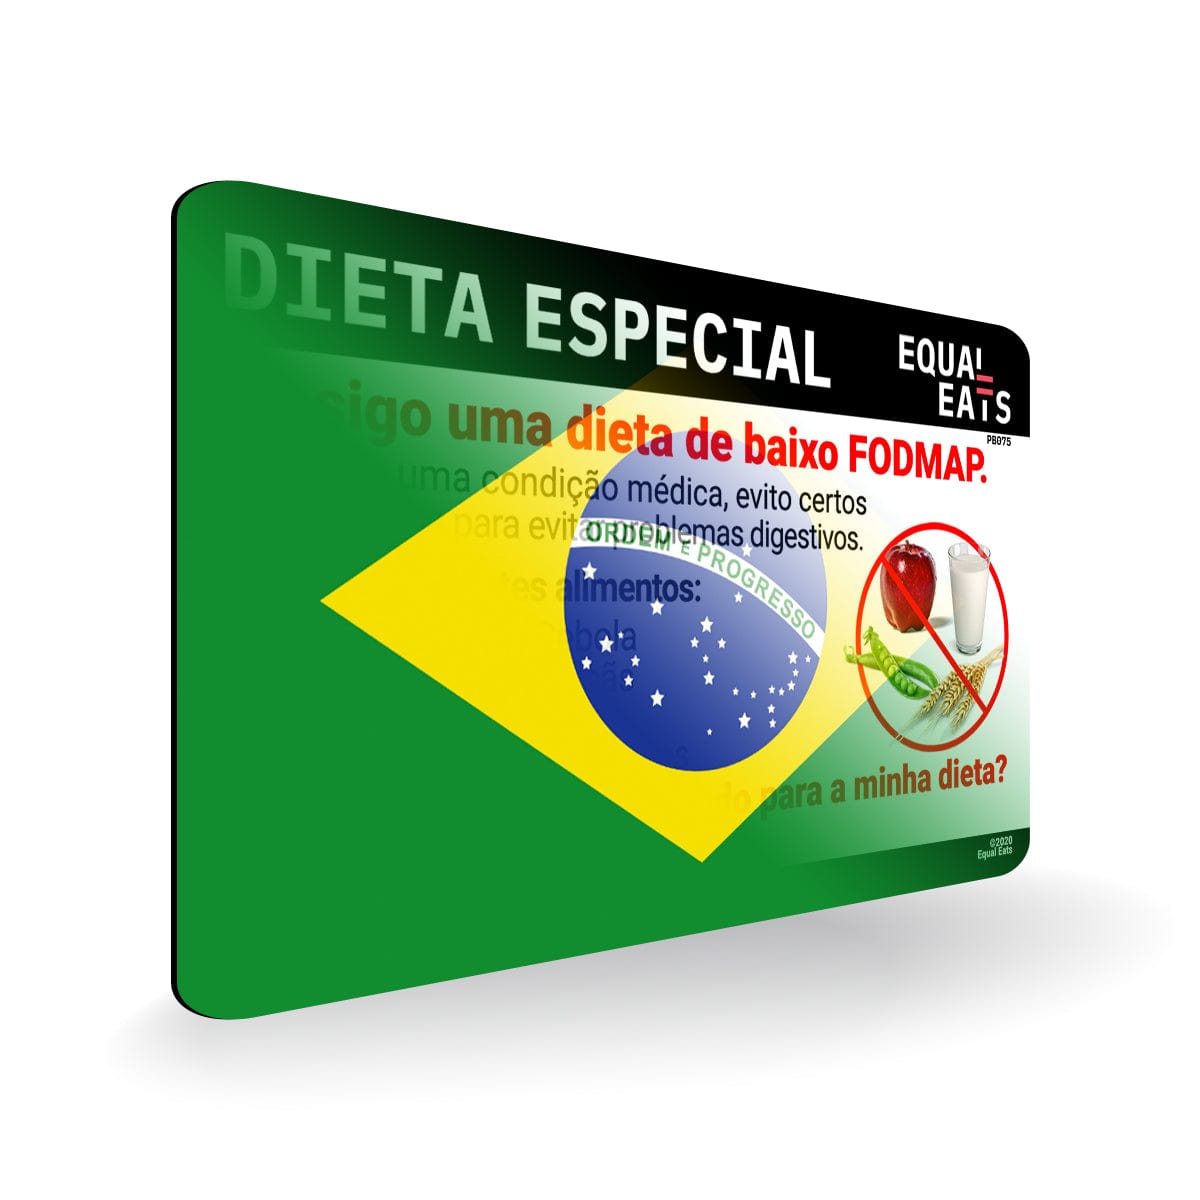 Low FODMAP Diet in Portuguese. Low FODMAP Diet Card for Brazil